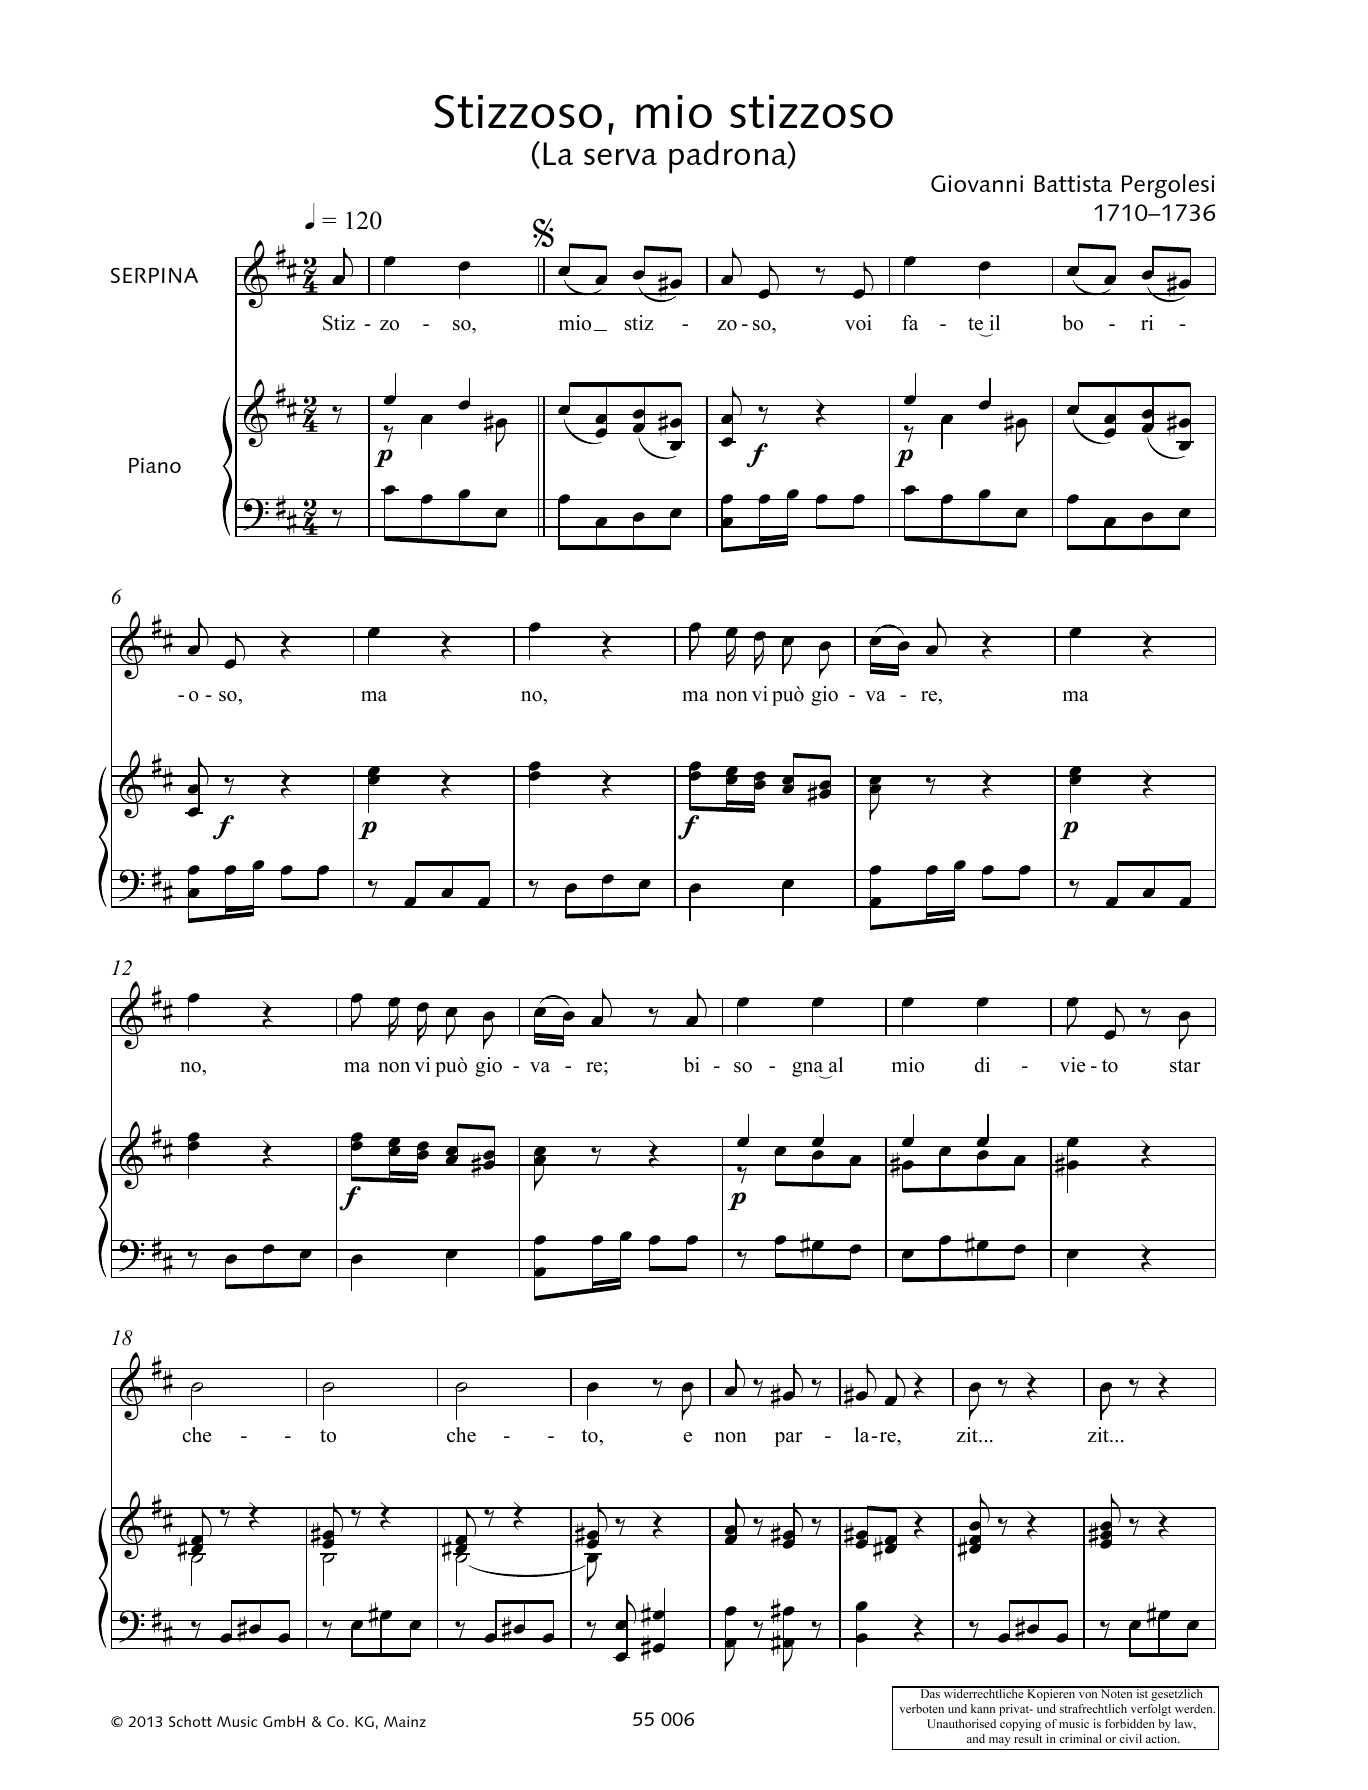 Giovanni Battista Pergolesi Stizzoso, mio stizzoso Sheet Music Notes & Chords for Piano & Vocal - Download or Print PDF